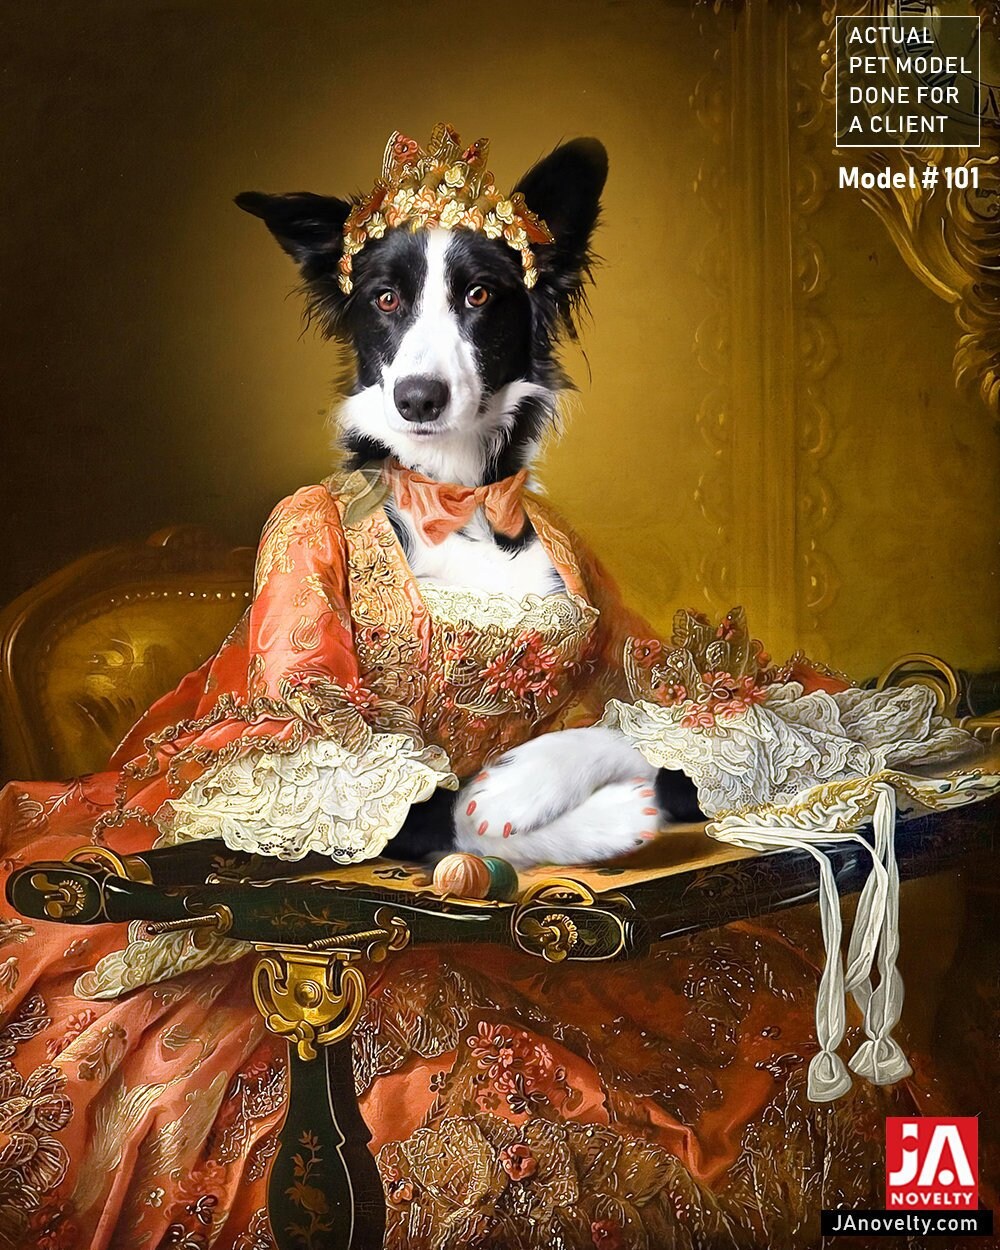 59 Top Pictures Royal Pet Portraits : Renaissance pet portrait,Regal pet portrait,Royal Pet ...